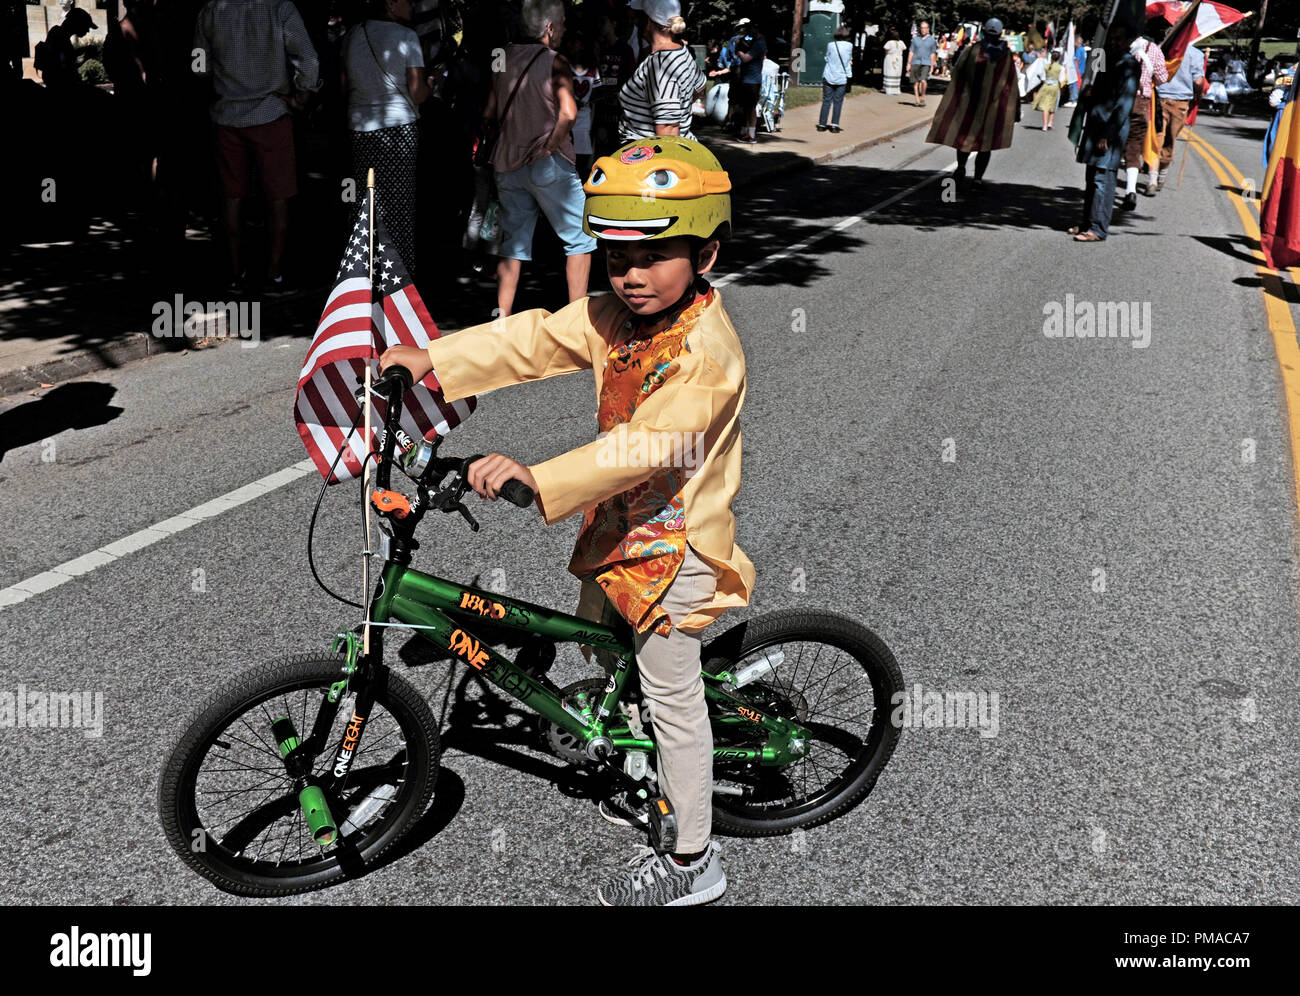 Vietnamese-American garçon sur son vélo à deux roues avec un drapeau américain sur son guidon prend part à la 73e célébration du jour de One World à Cleveland Banque D'Images